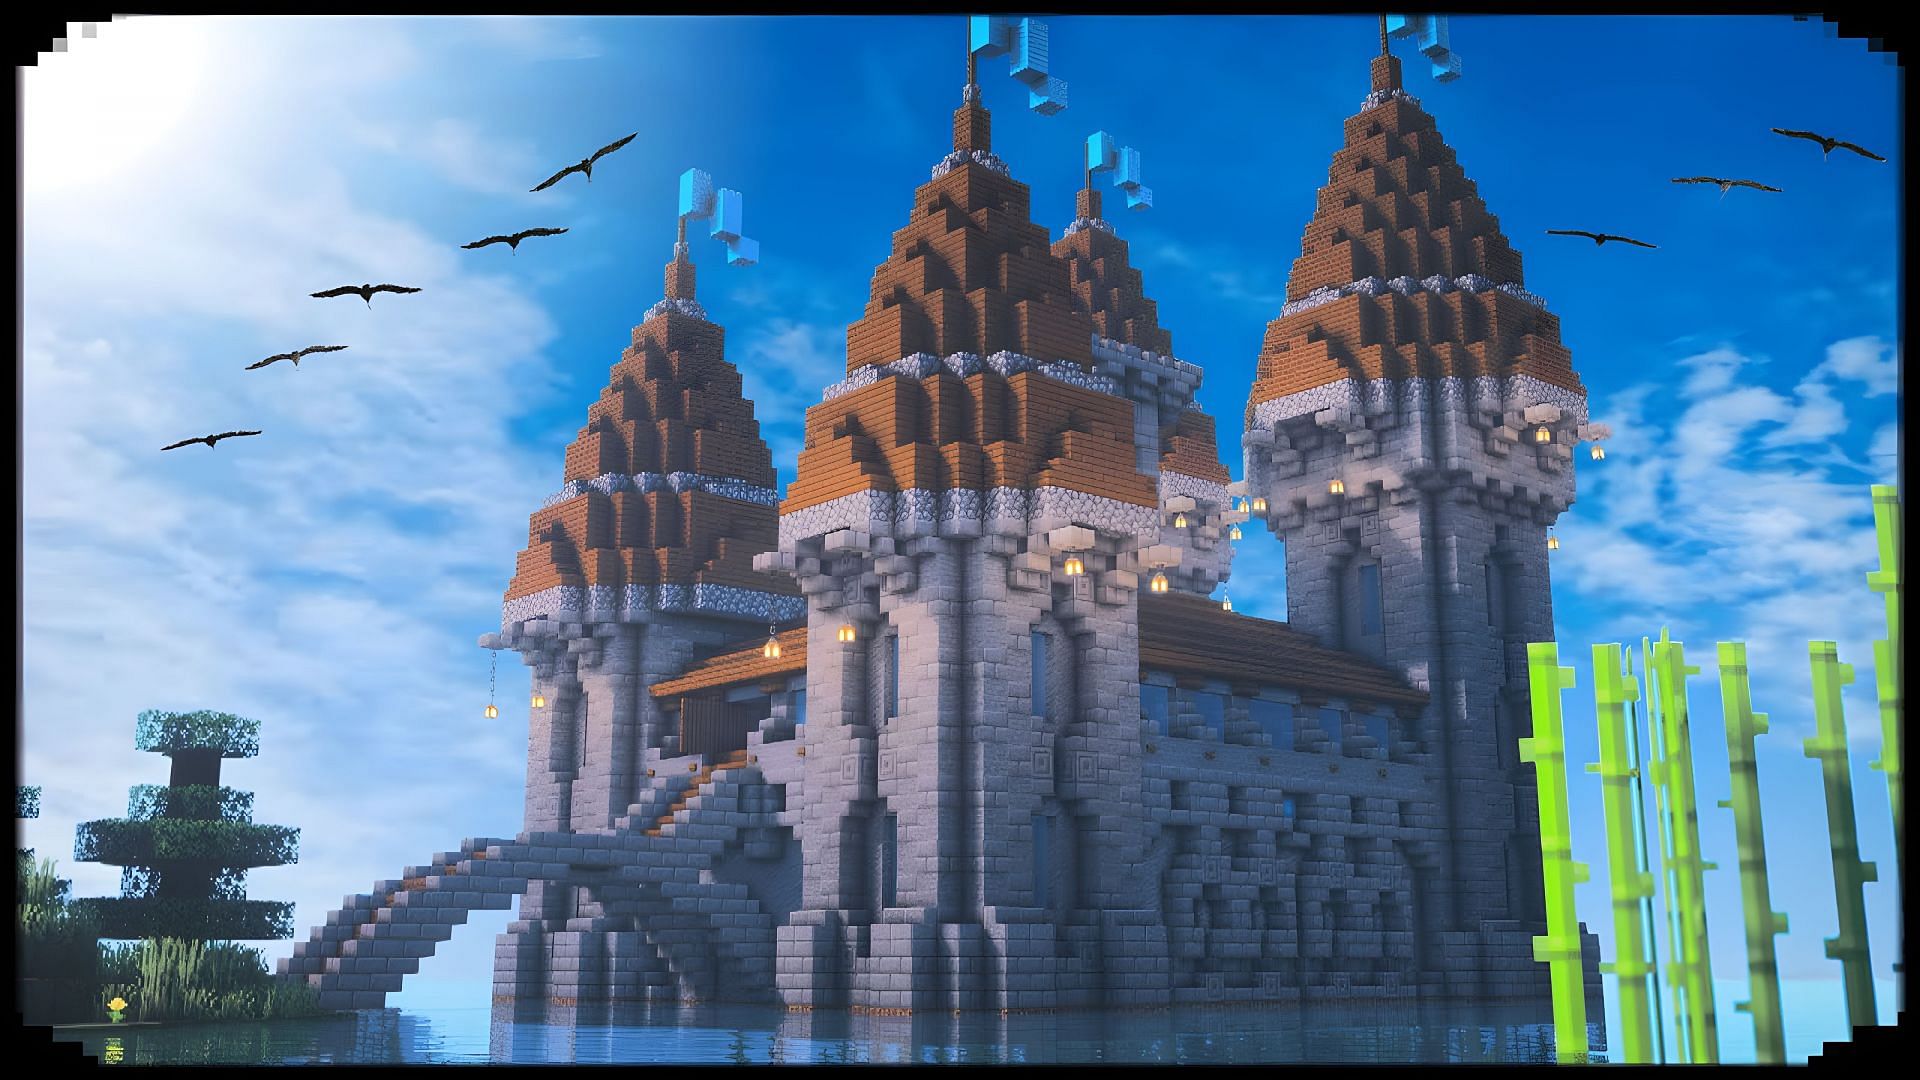 Castle Tower  Minecraft castle, Minecraft architecture, Minecraft